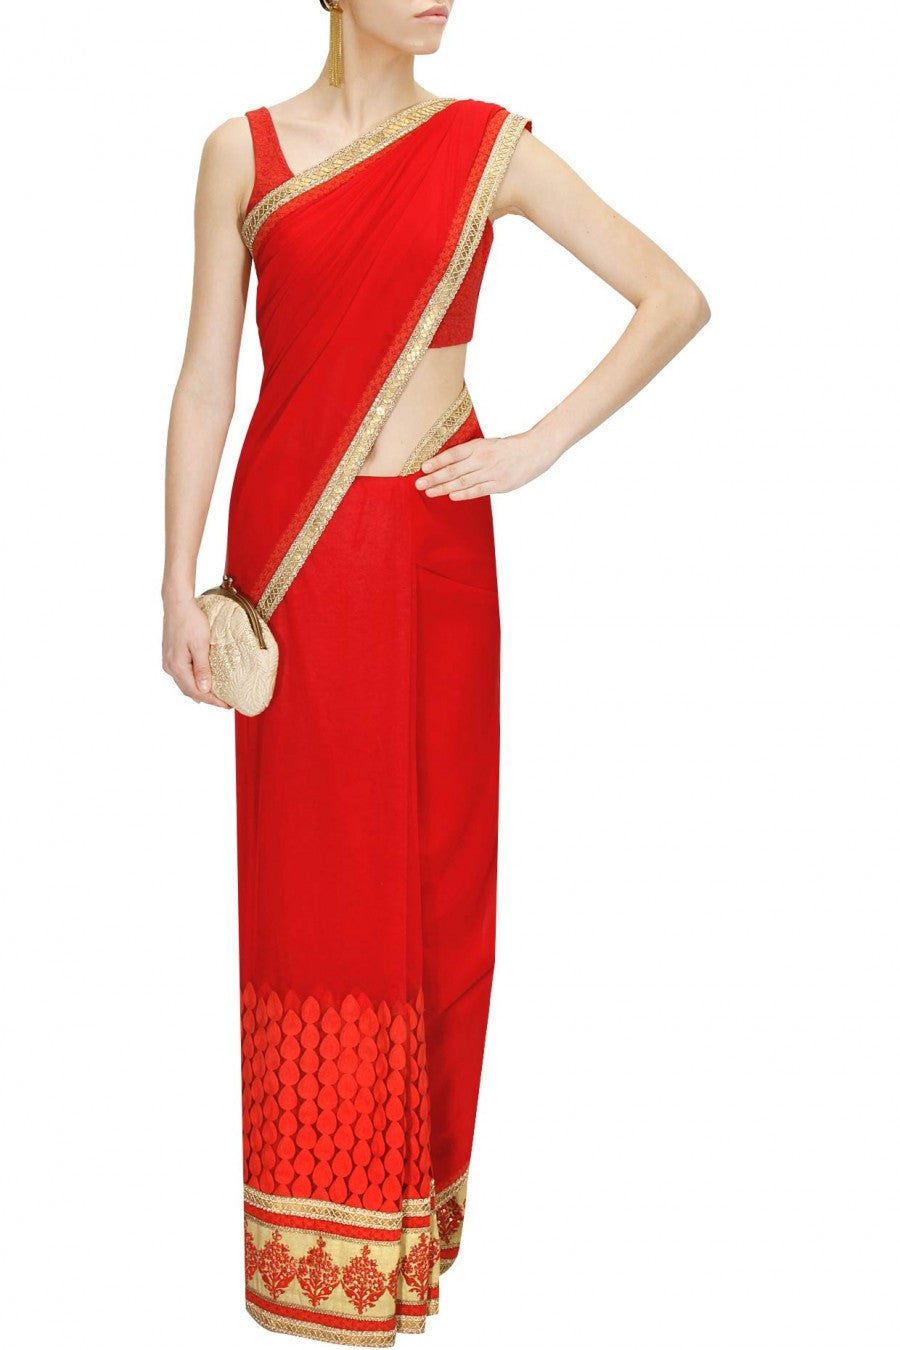 Red Colour Designer Saree